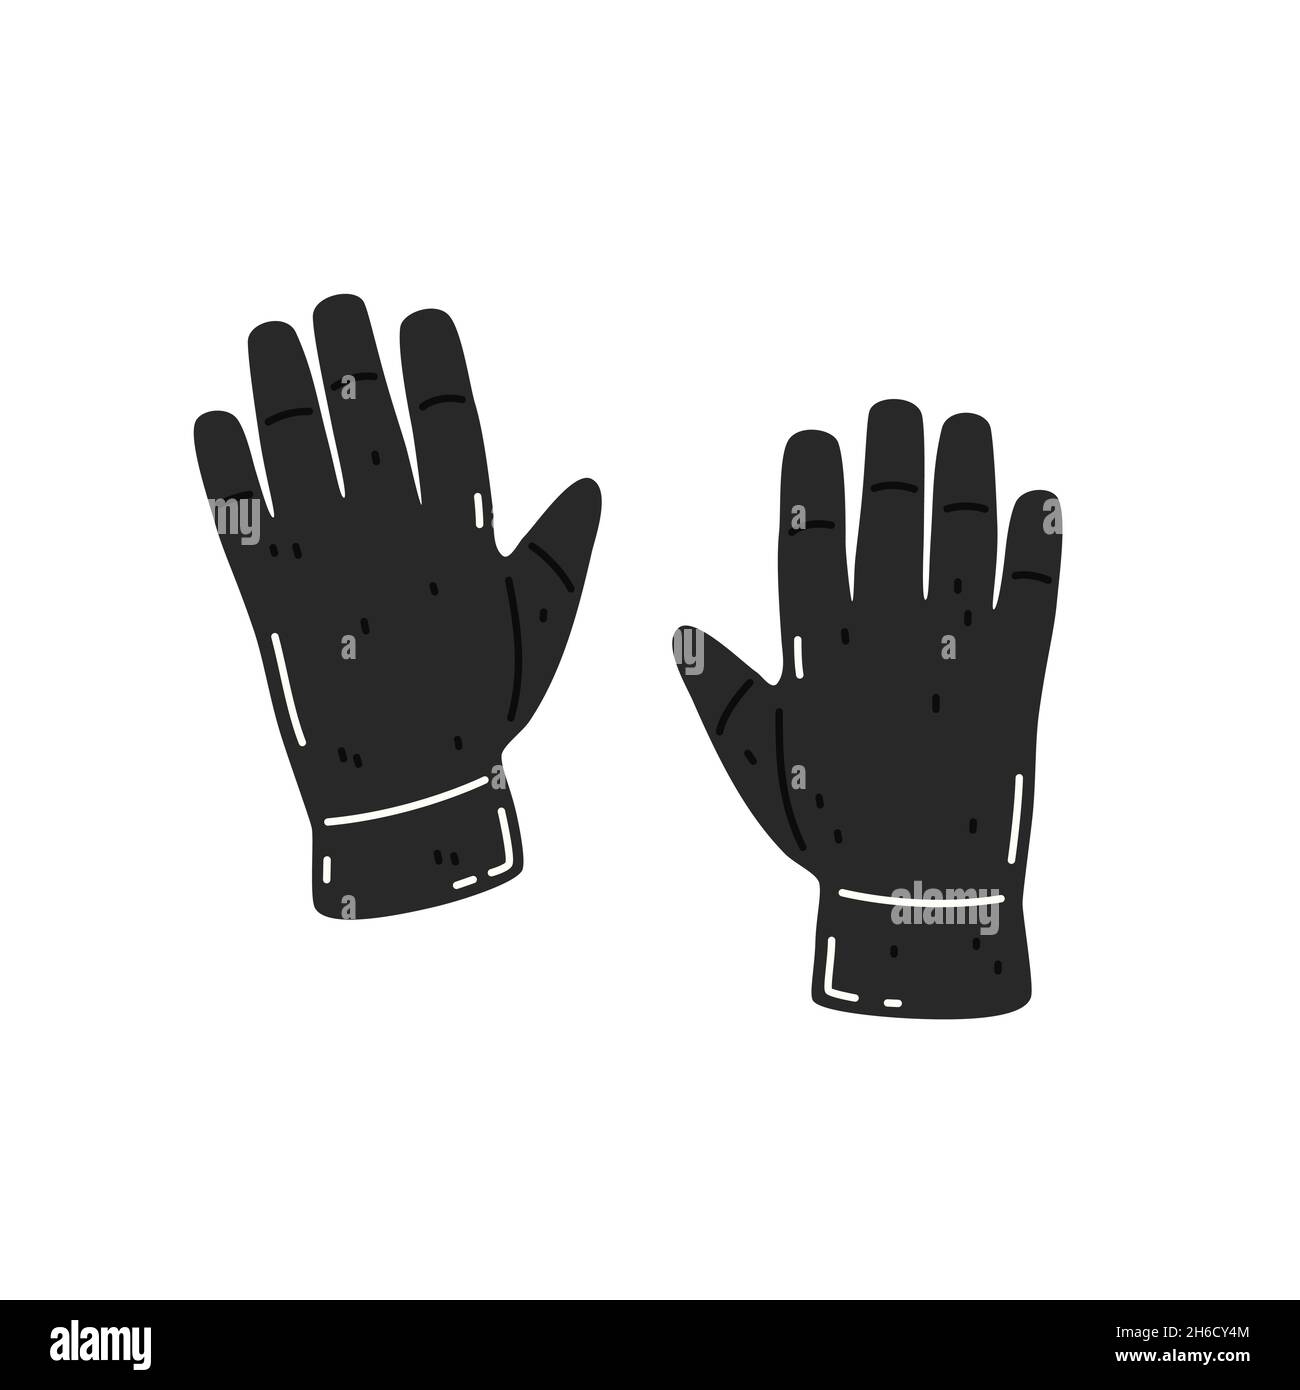 Gants noirs chauds.Vêtements d'automne ou d'hiver de saison.Illustration vectorielle plate Illustration de Vecteur